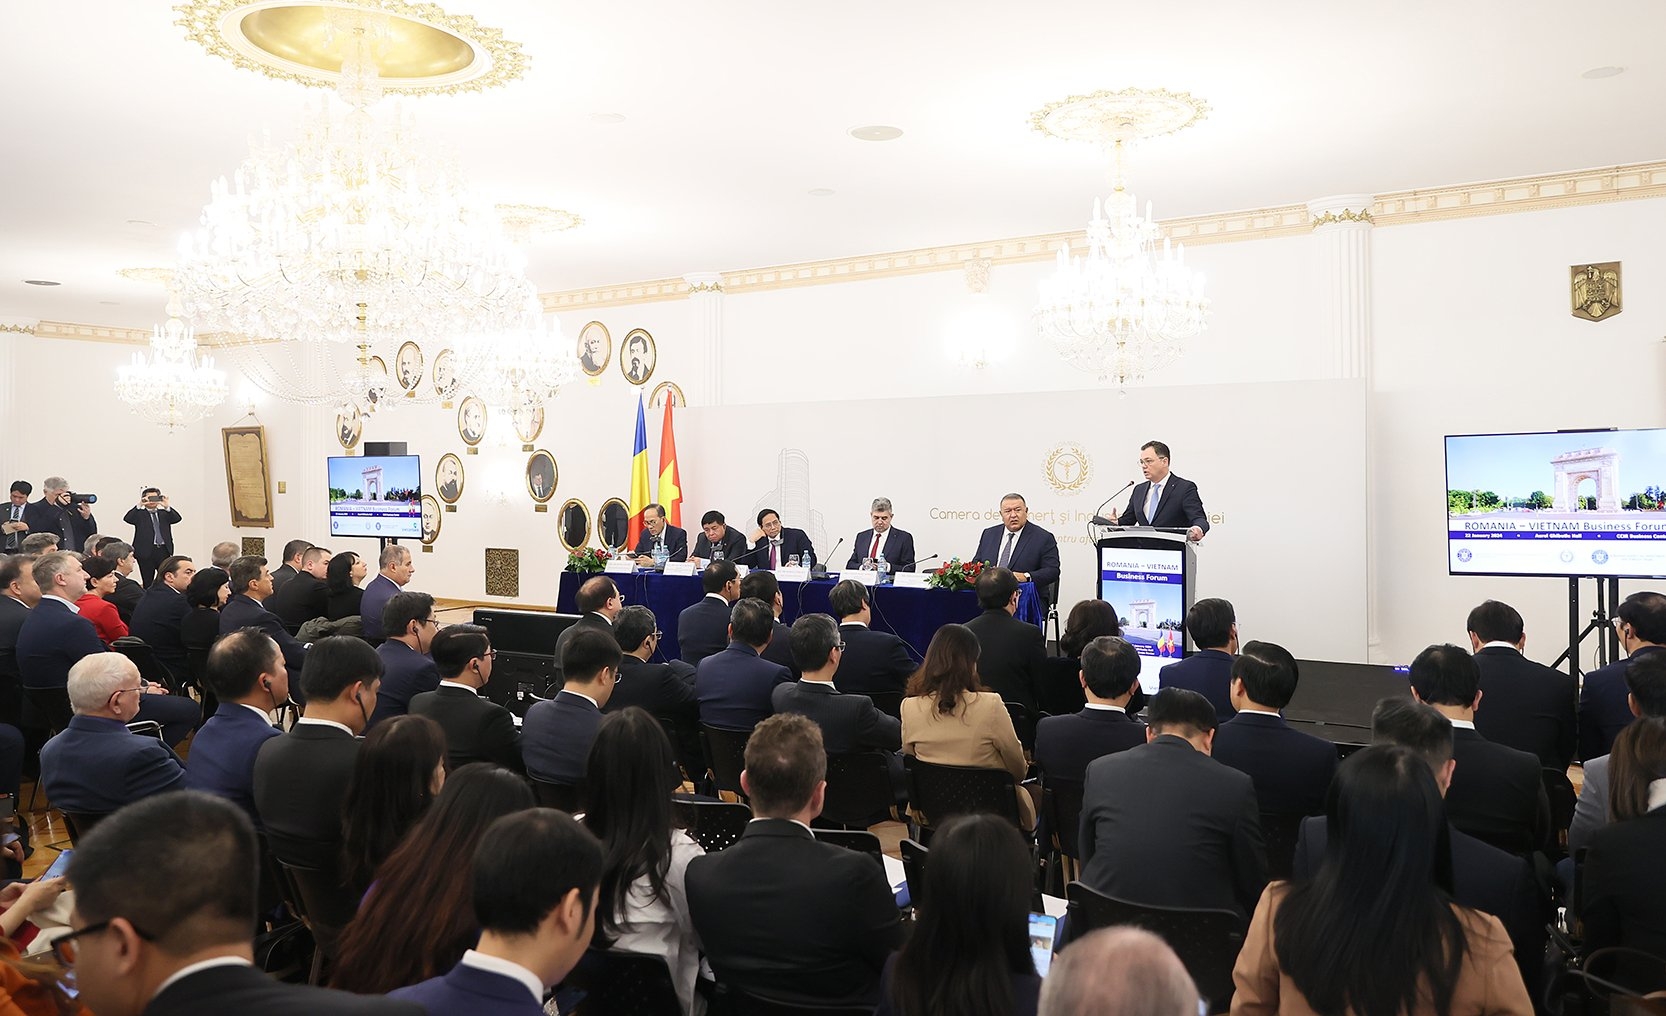 Doanh nghiệp Việt Nam và Romania cần chủ động kết nối, hợp tác về kinh tế